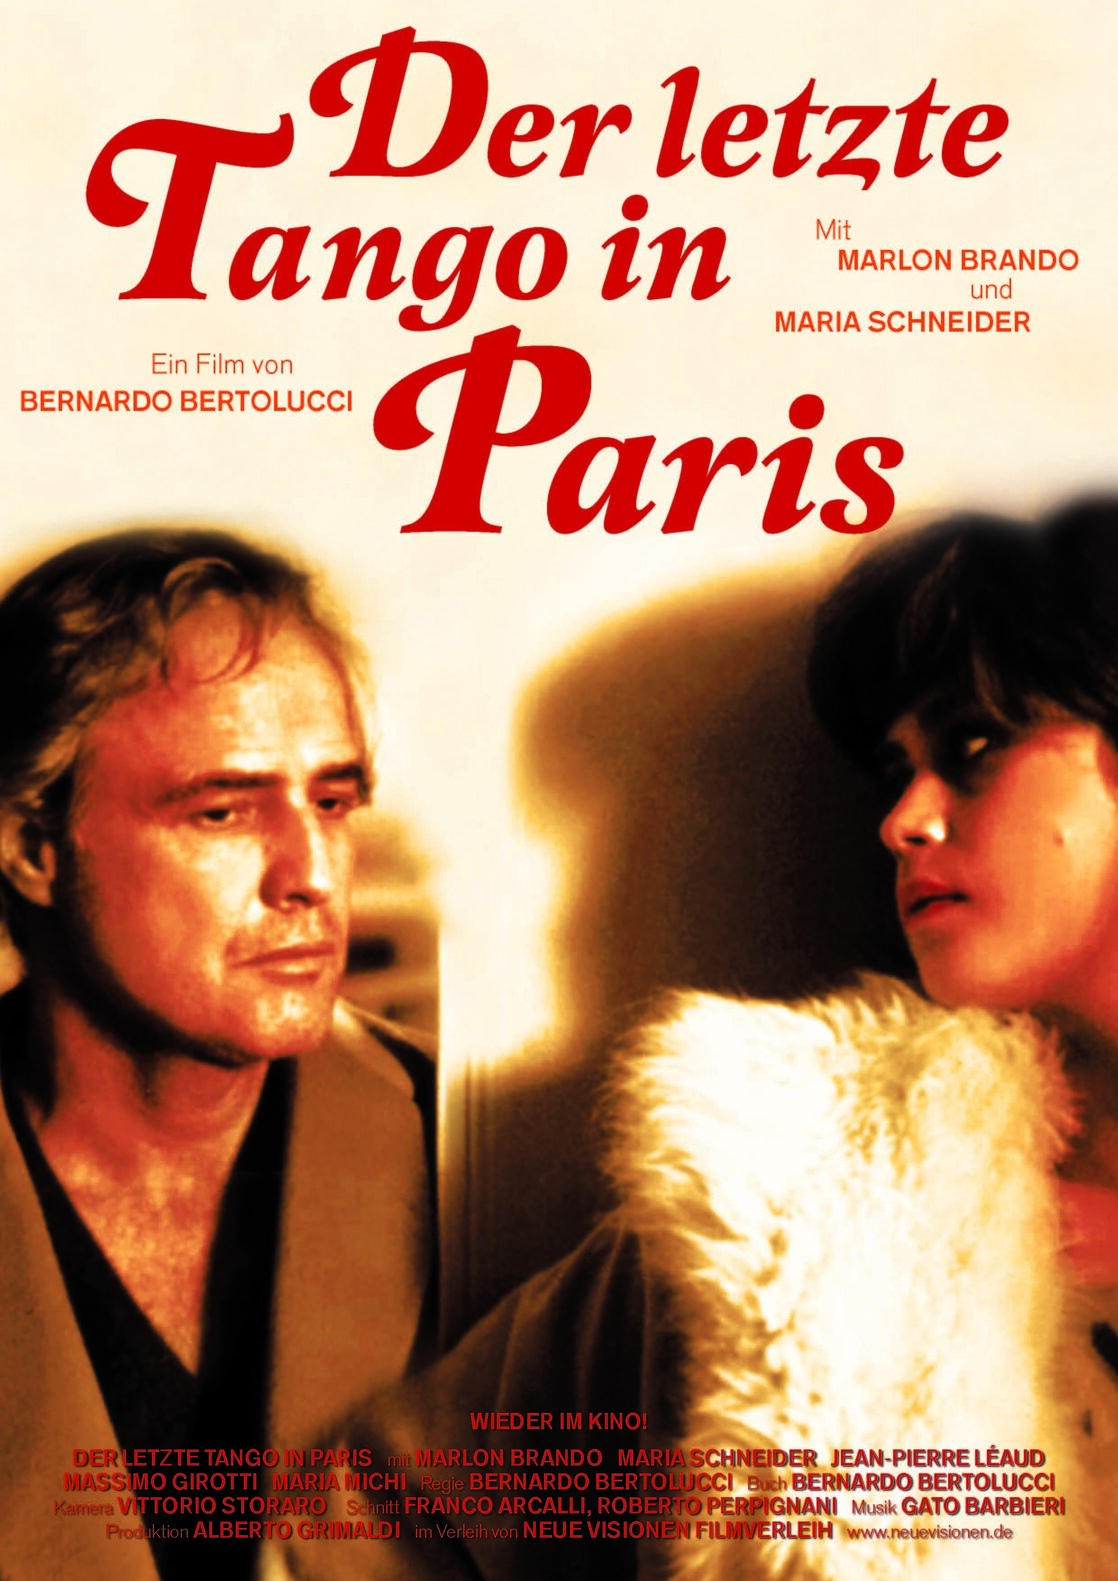 1972 Last Tango In Paris